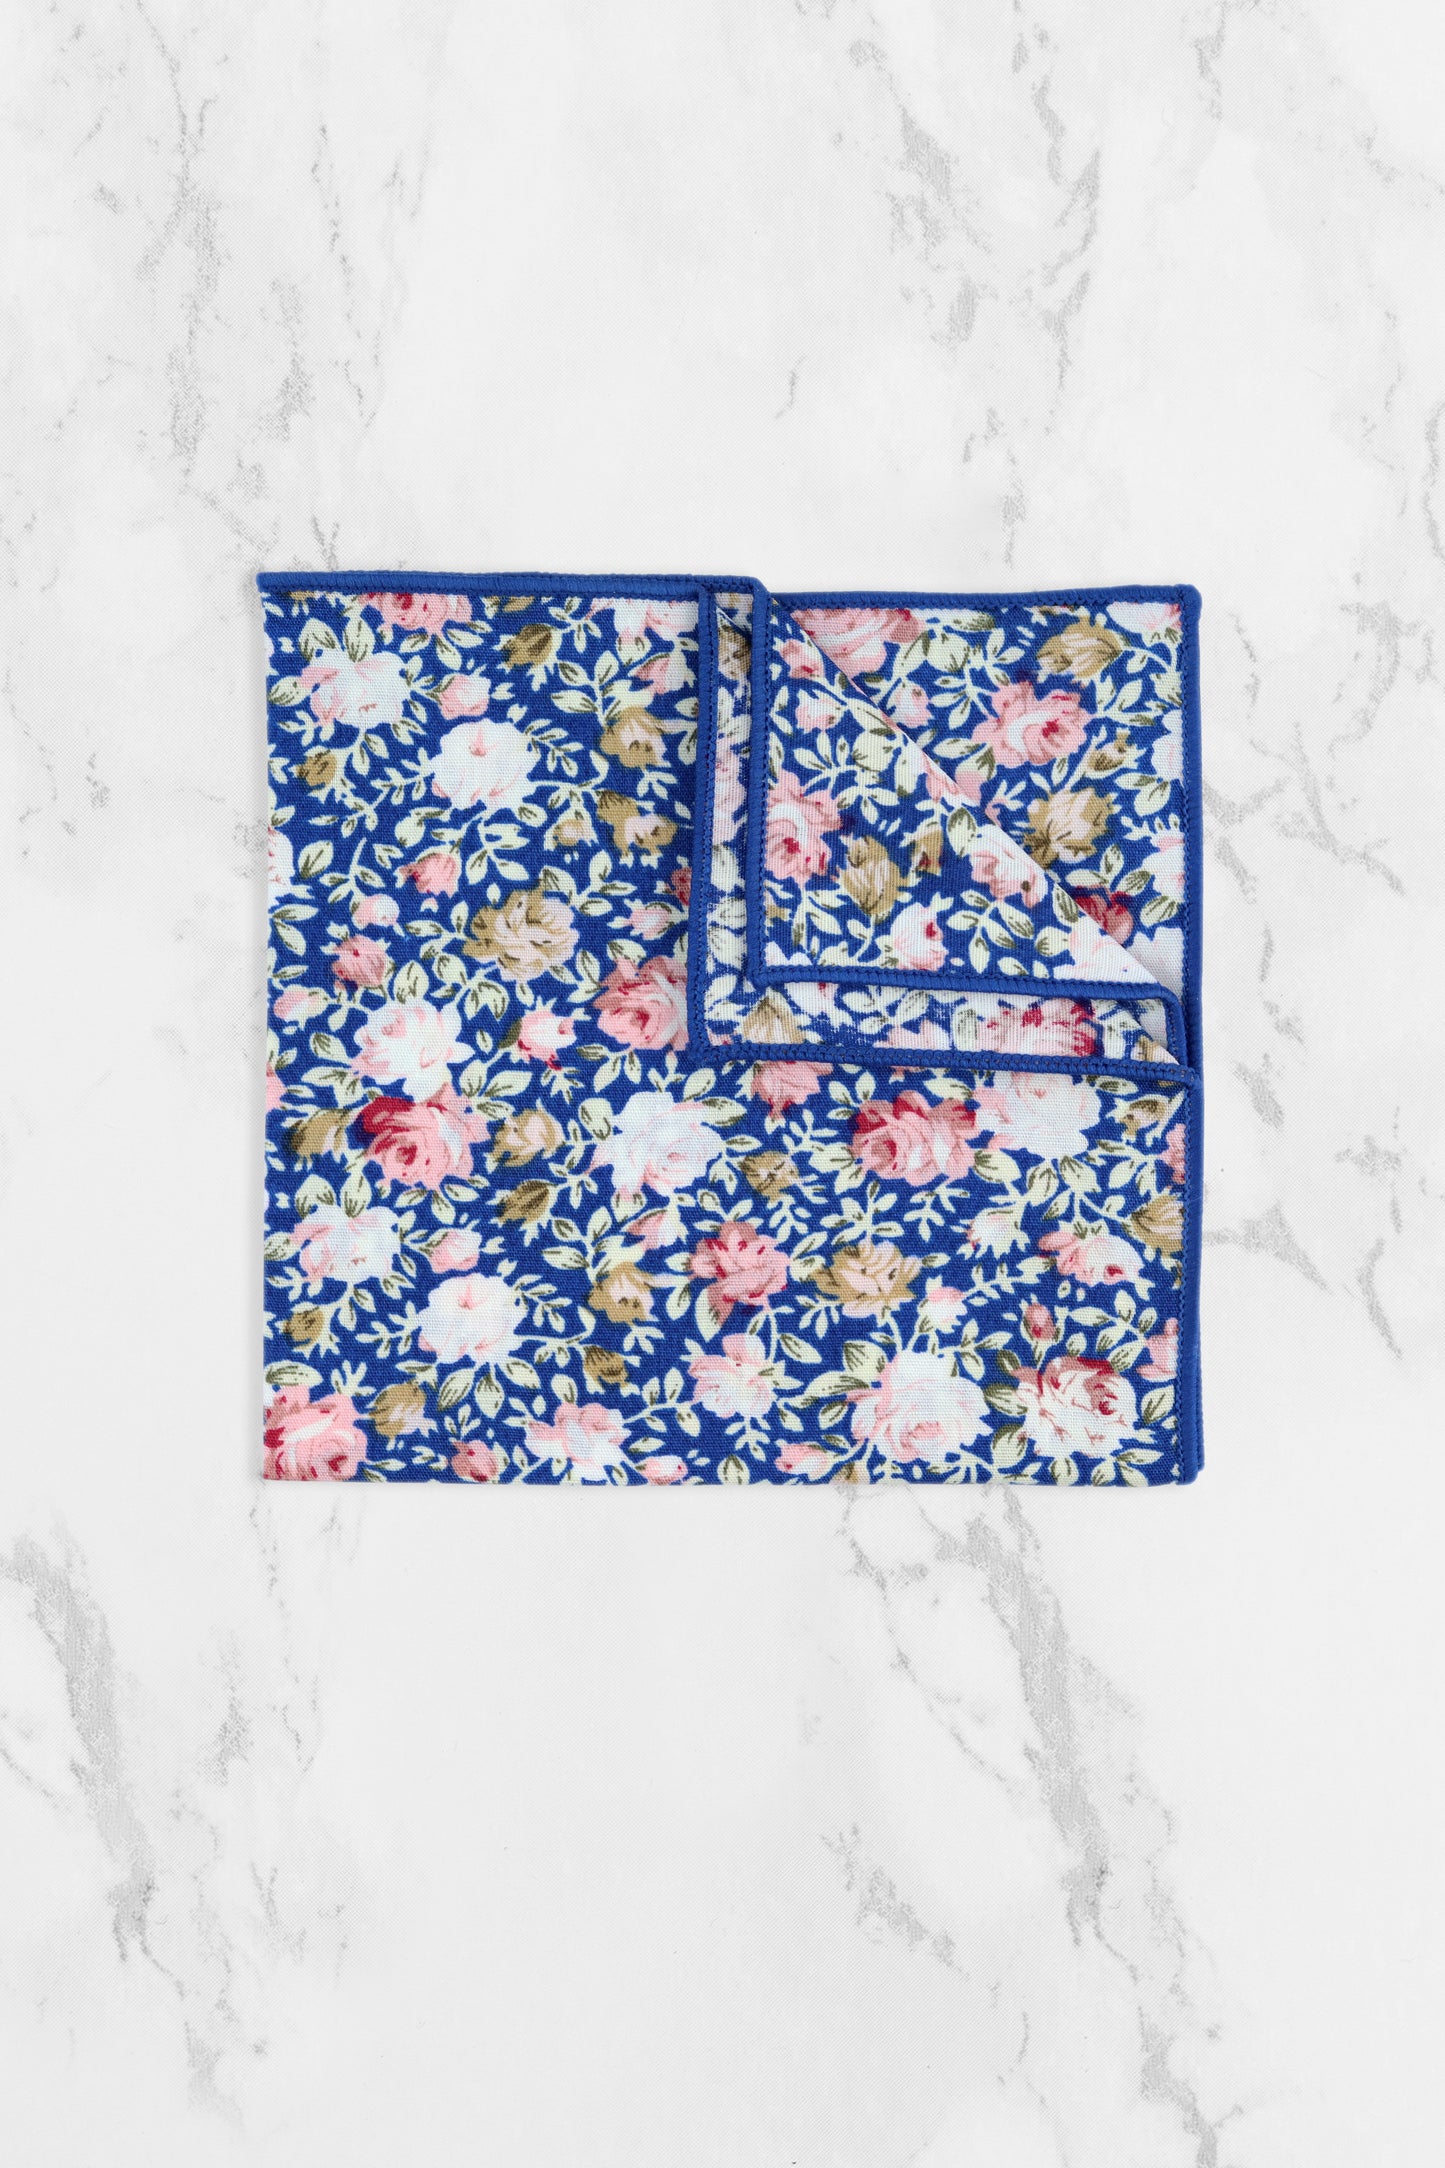 100% Cotton Floral Print Tie - Blue & Pink